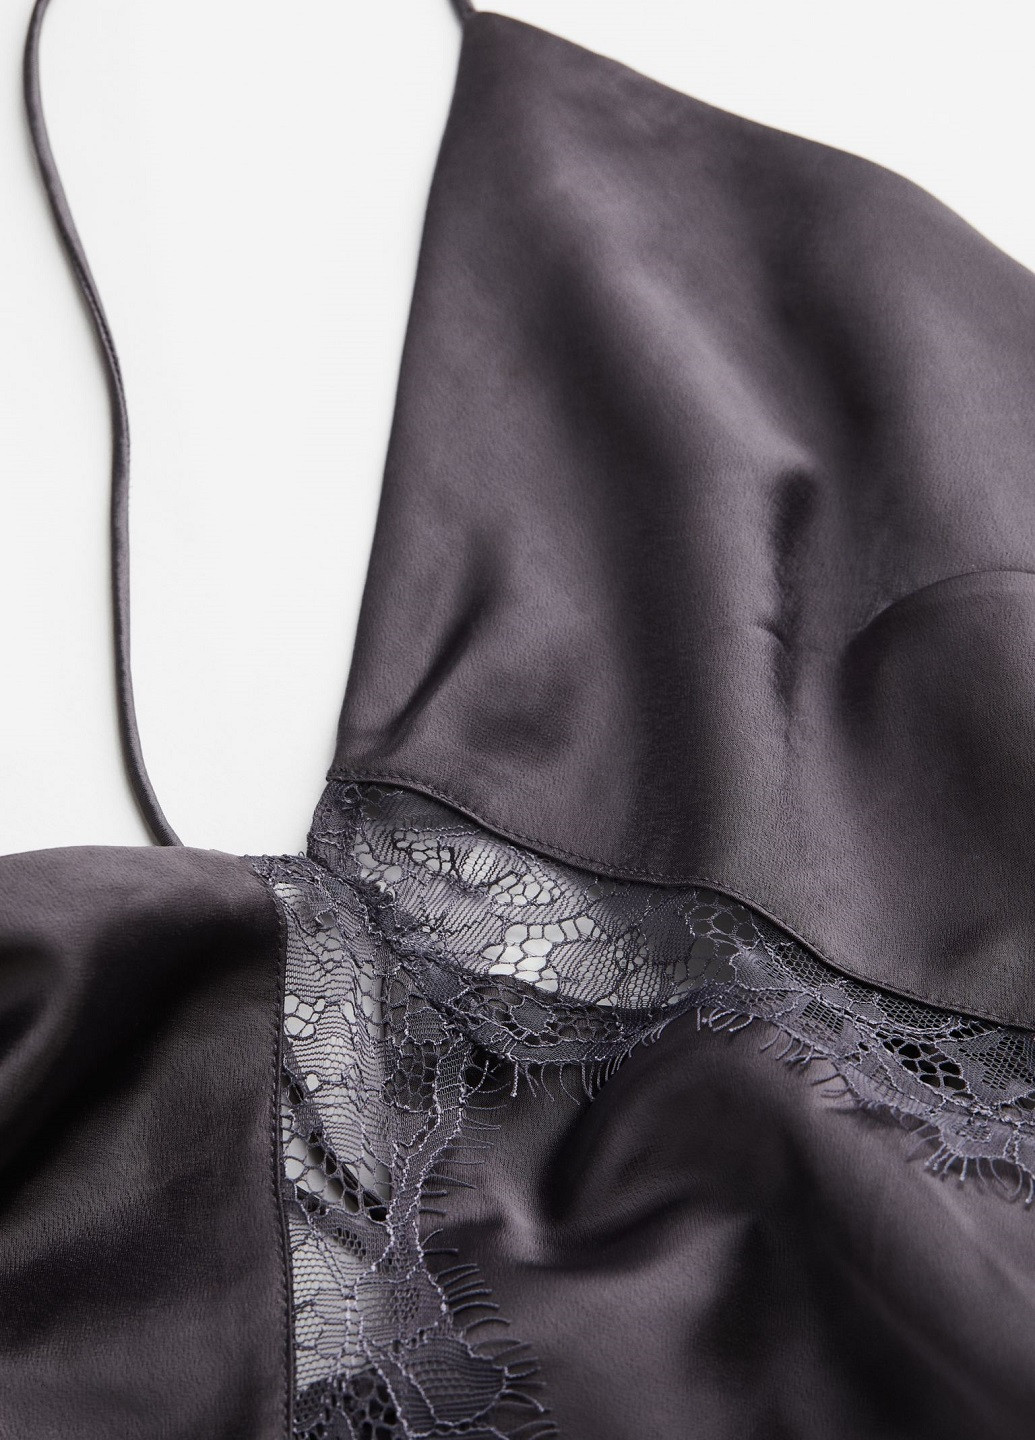 Темно-серое коктейльное платье H&M однотонное